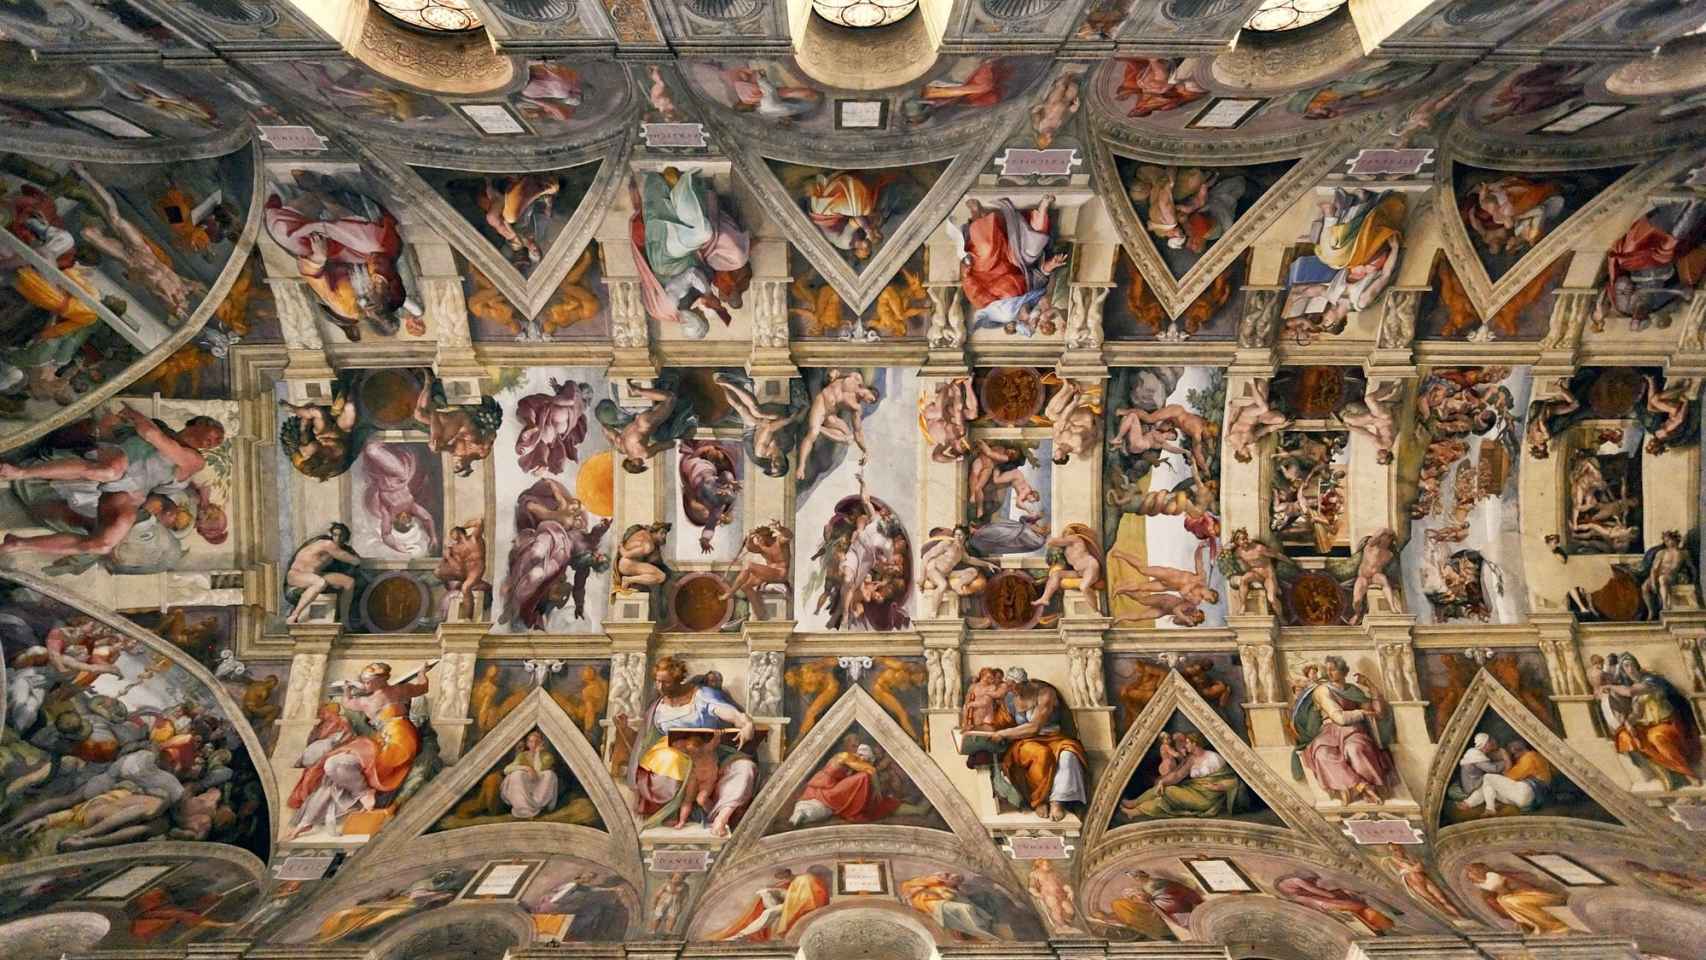 Bóveda de la Capilla Sixtina (Ciudad del Vaticano), pintada por Miguel Ángel Buonarroti entre 1508 y 1512.